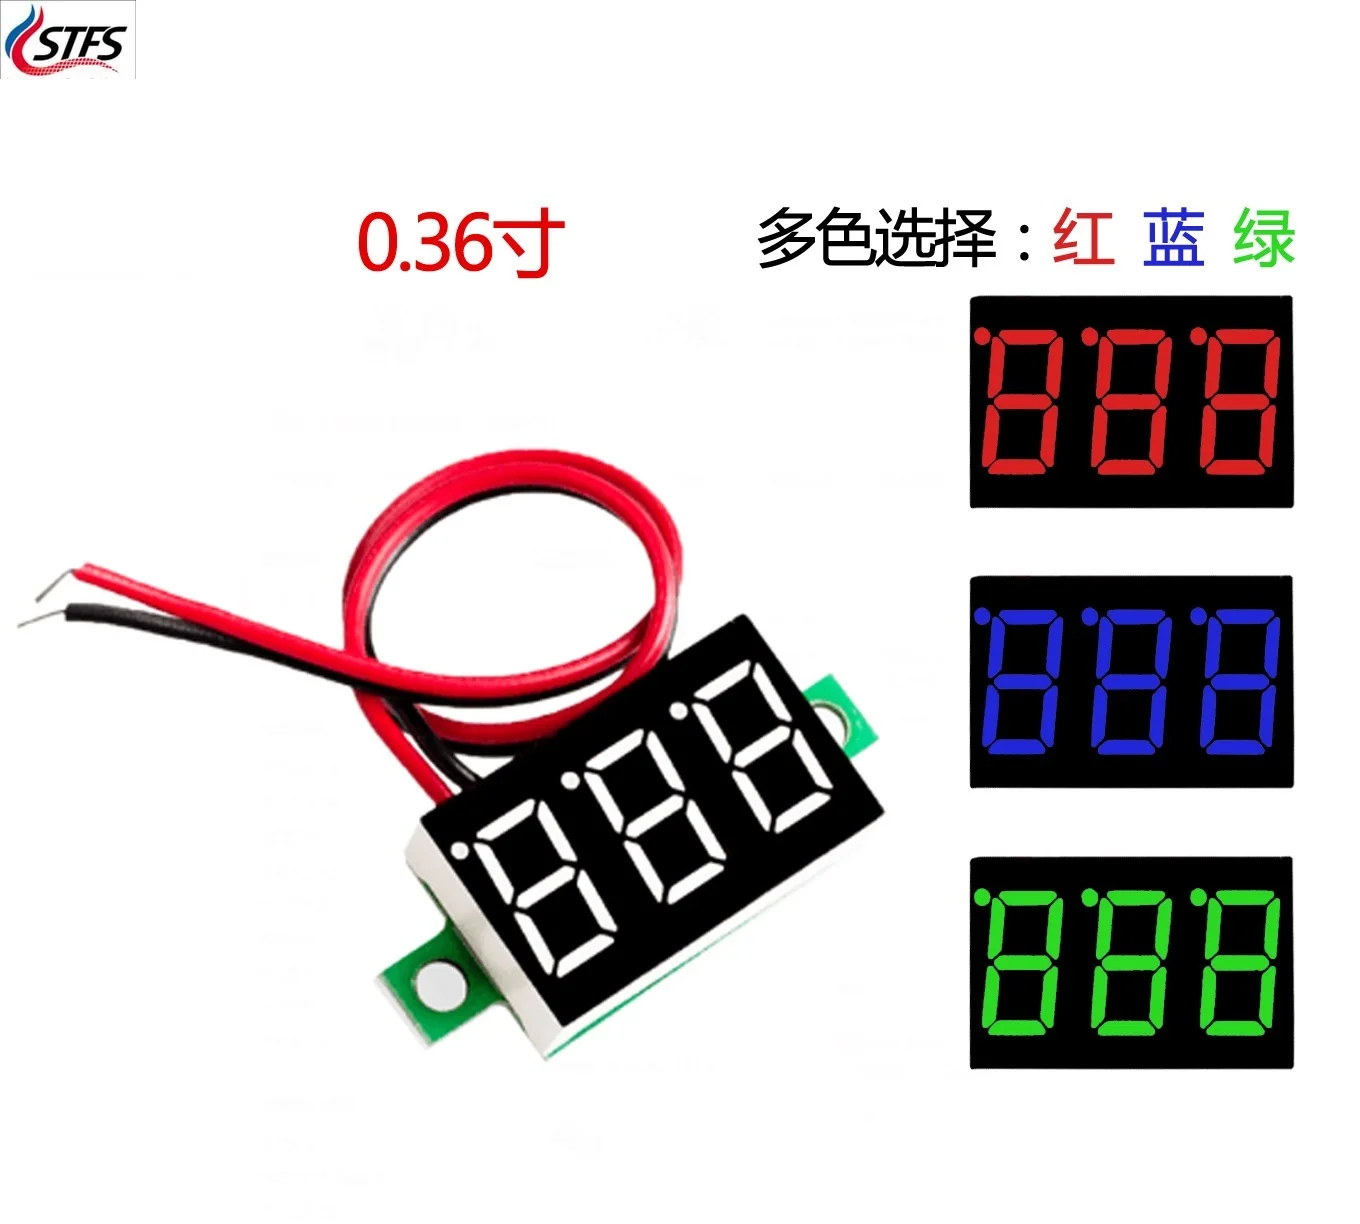 

0.36 Inch 0.36'' DC 4.7-32V 3 Digit Display Voltmeter Mini LED Digital Panel Volt Voltage Meter Instrument Red/Blue/Gree/White